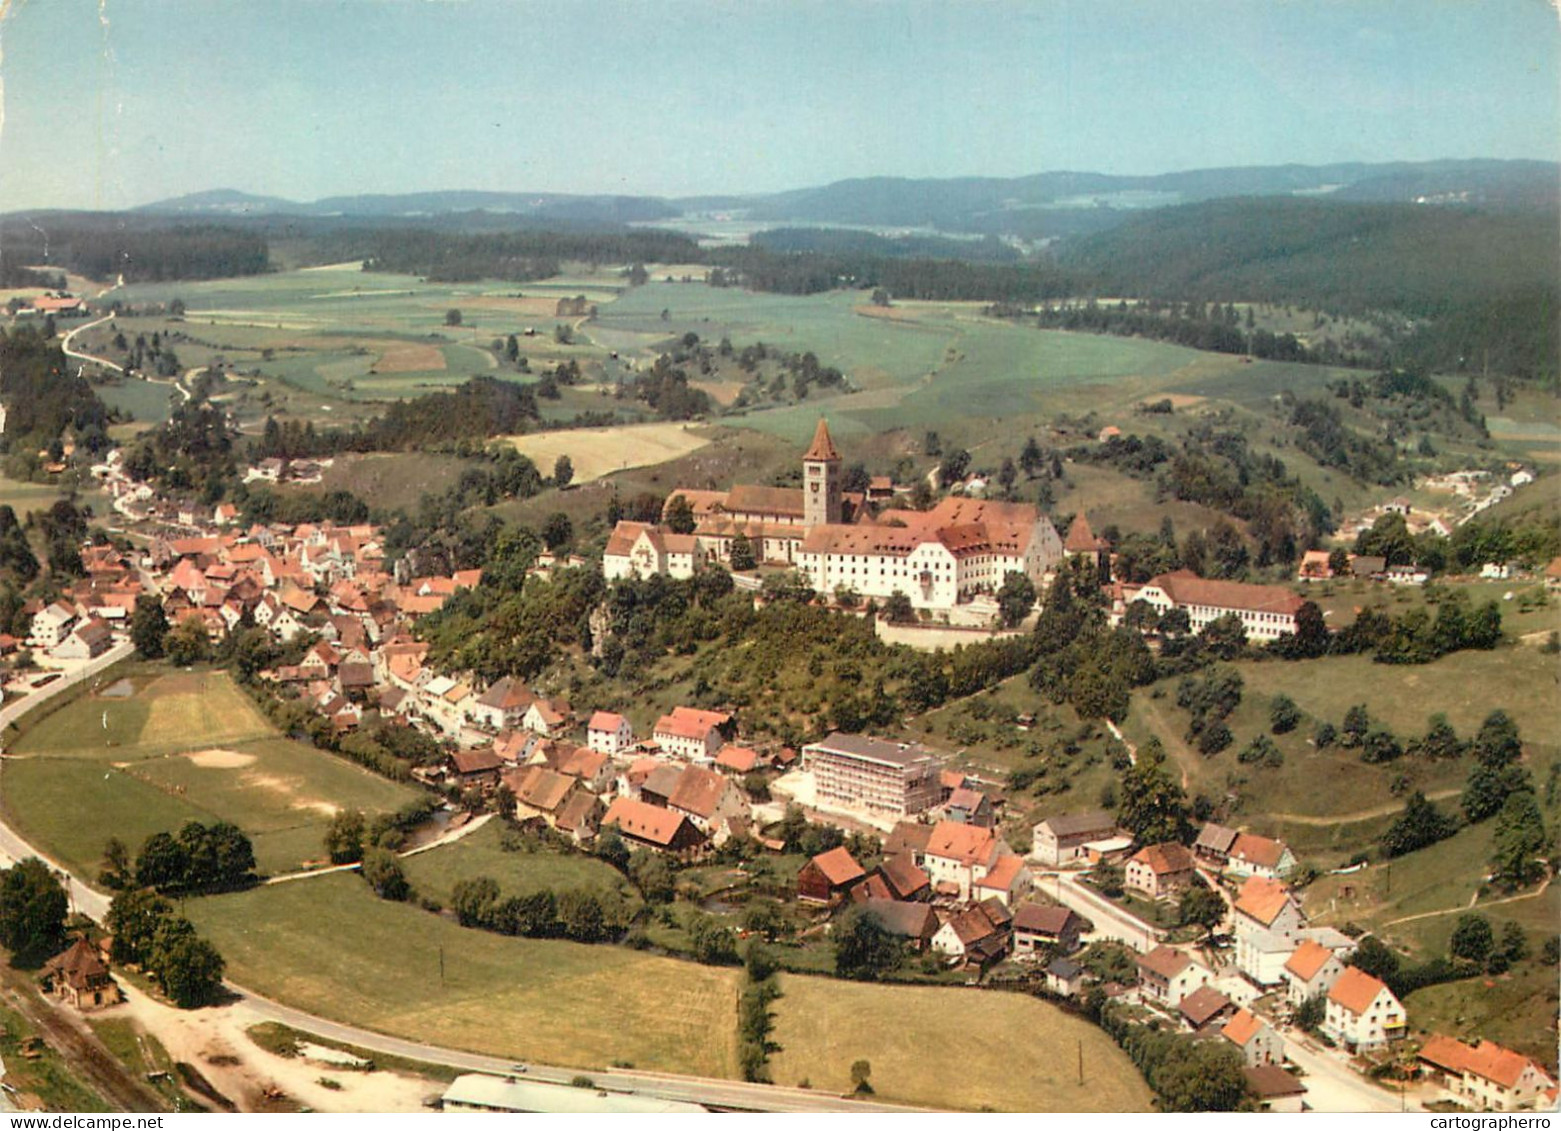 Germany Kastl Bei Amberg Ungarisches Gymnasium Panoramic View - Amberg